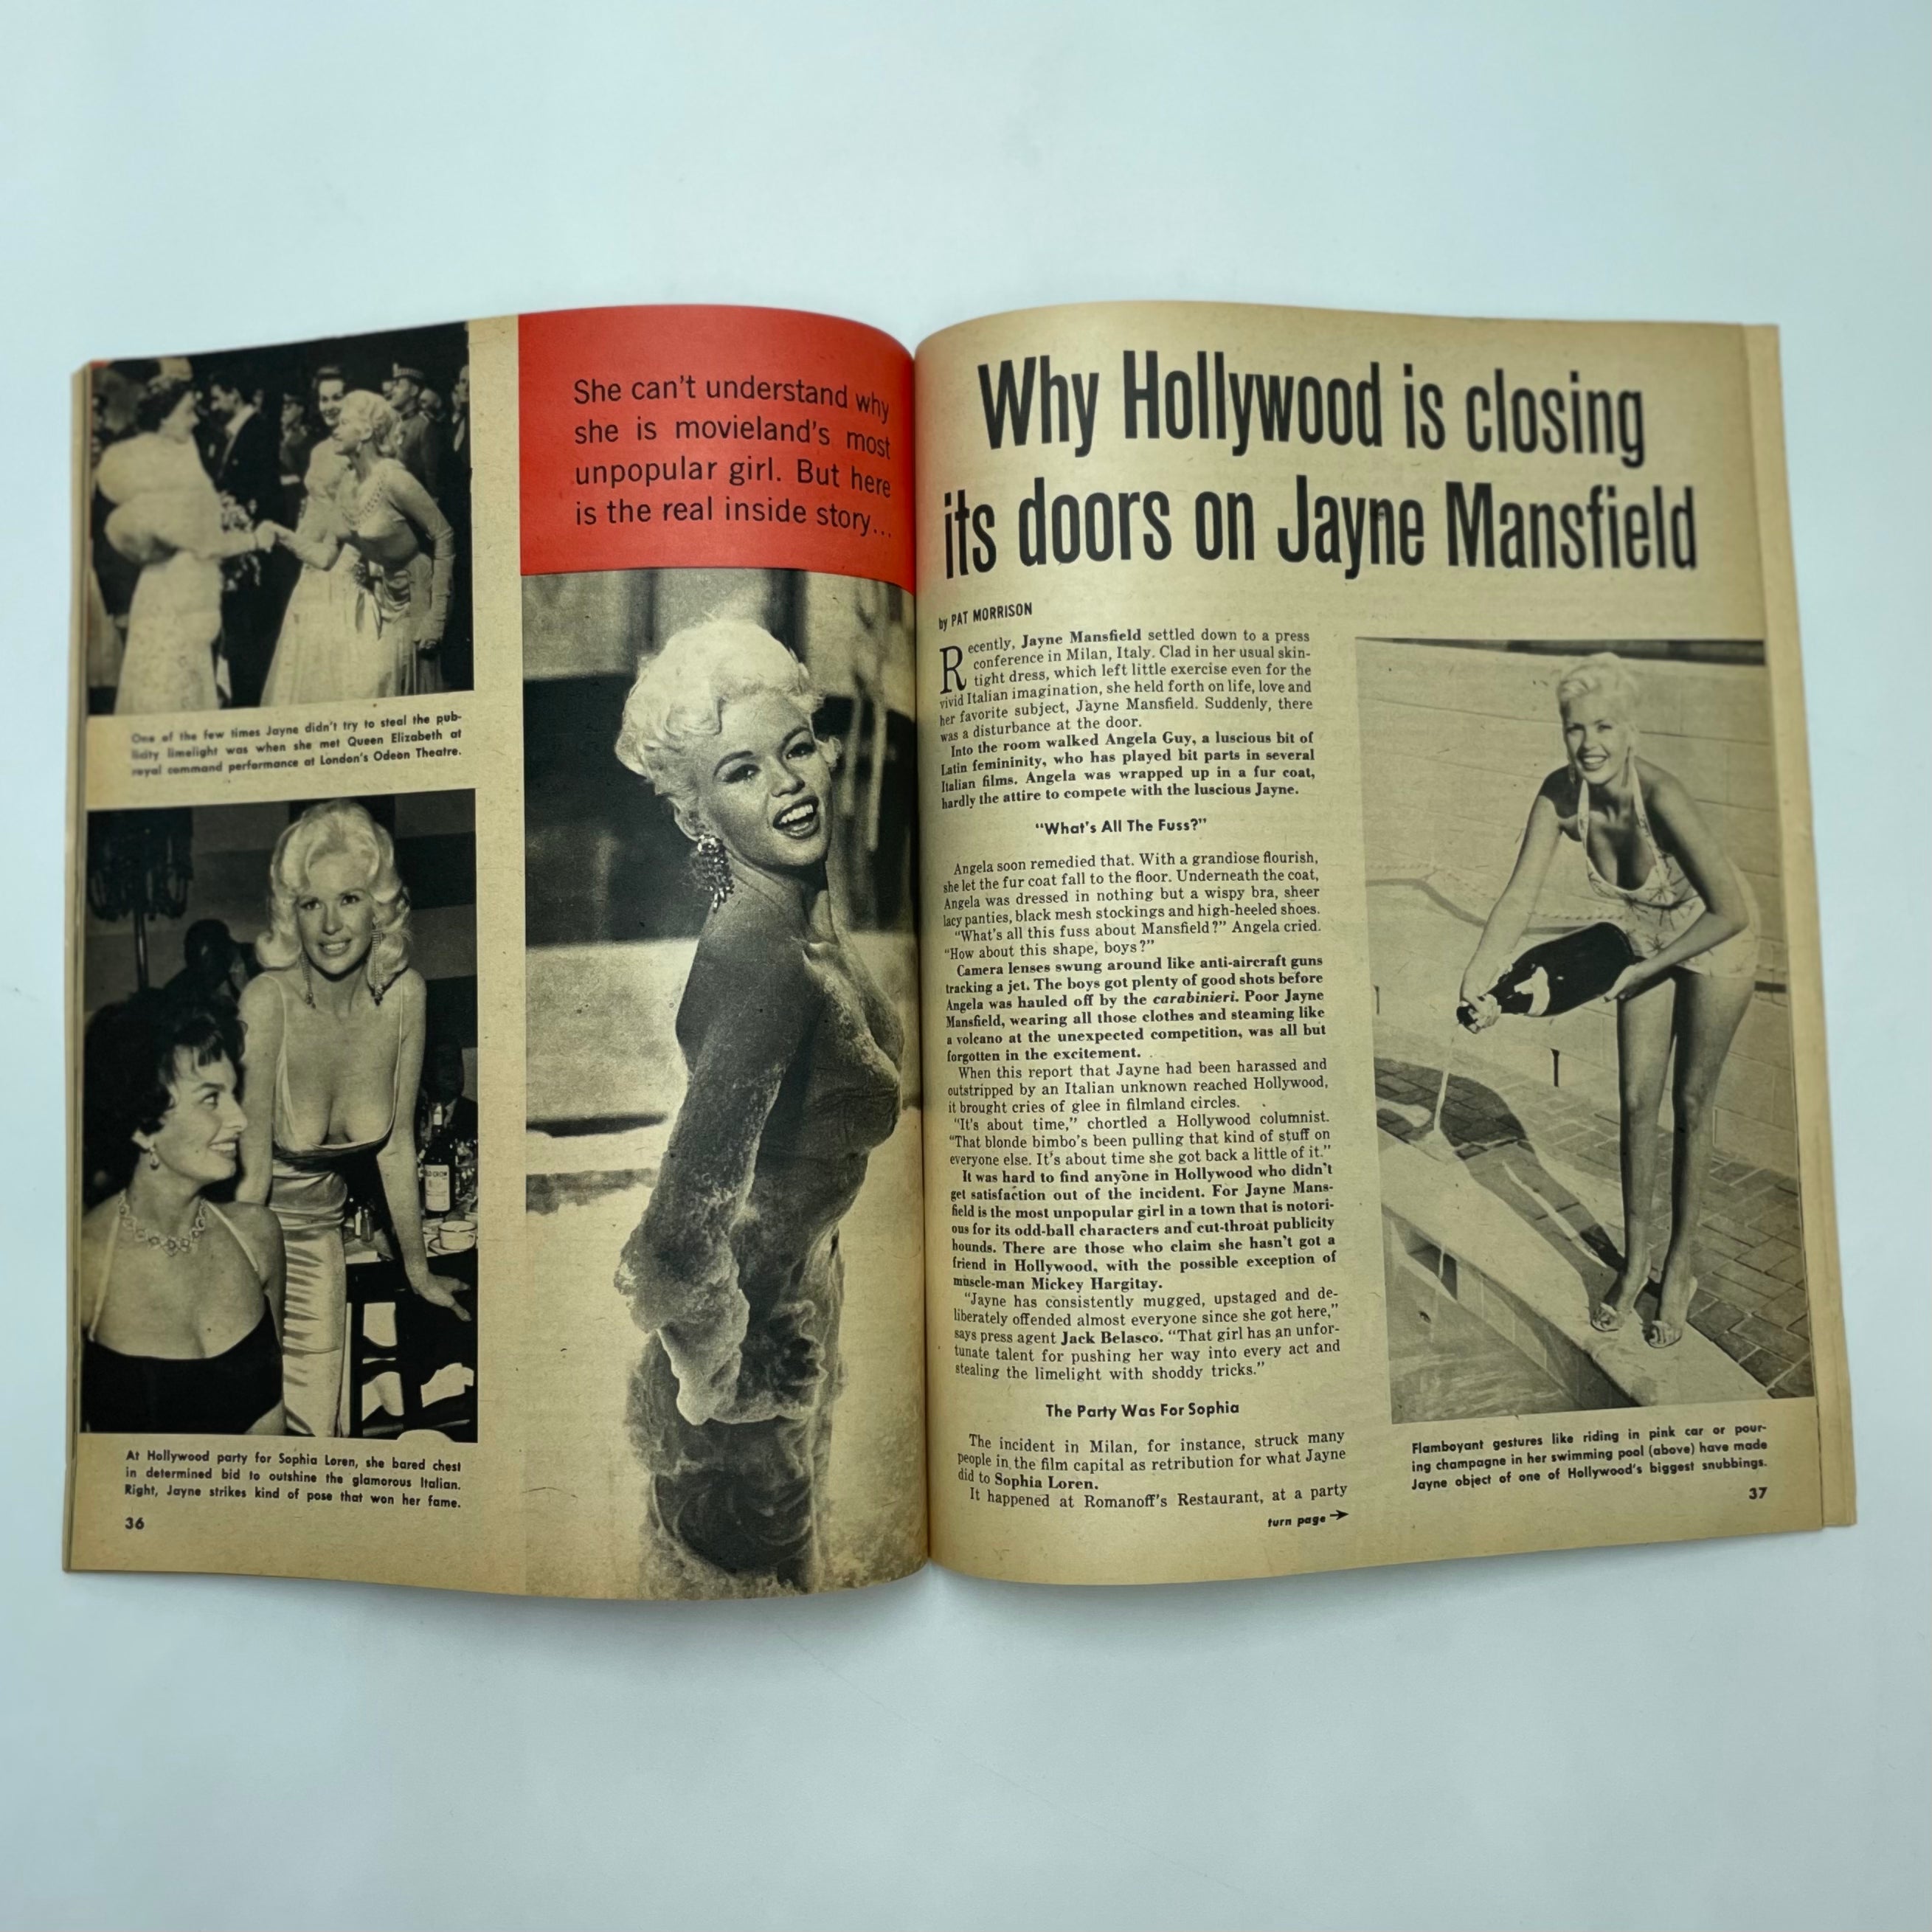 Inside Story - April 1958